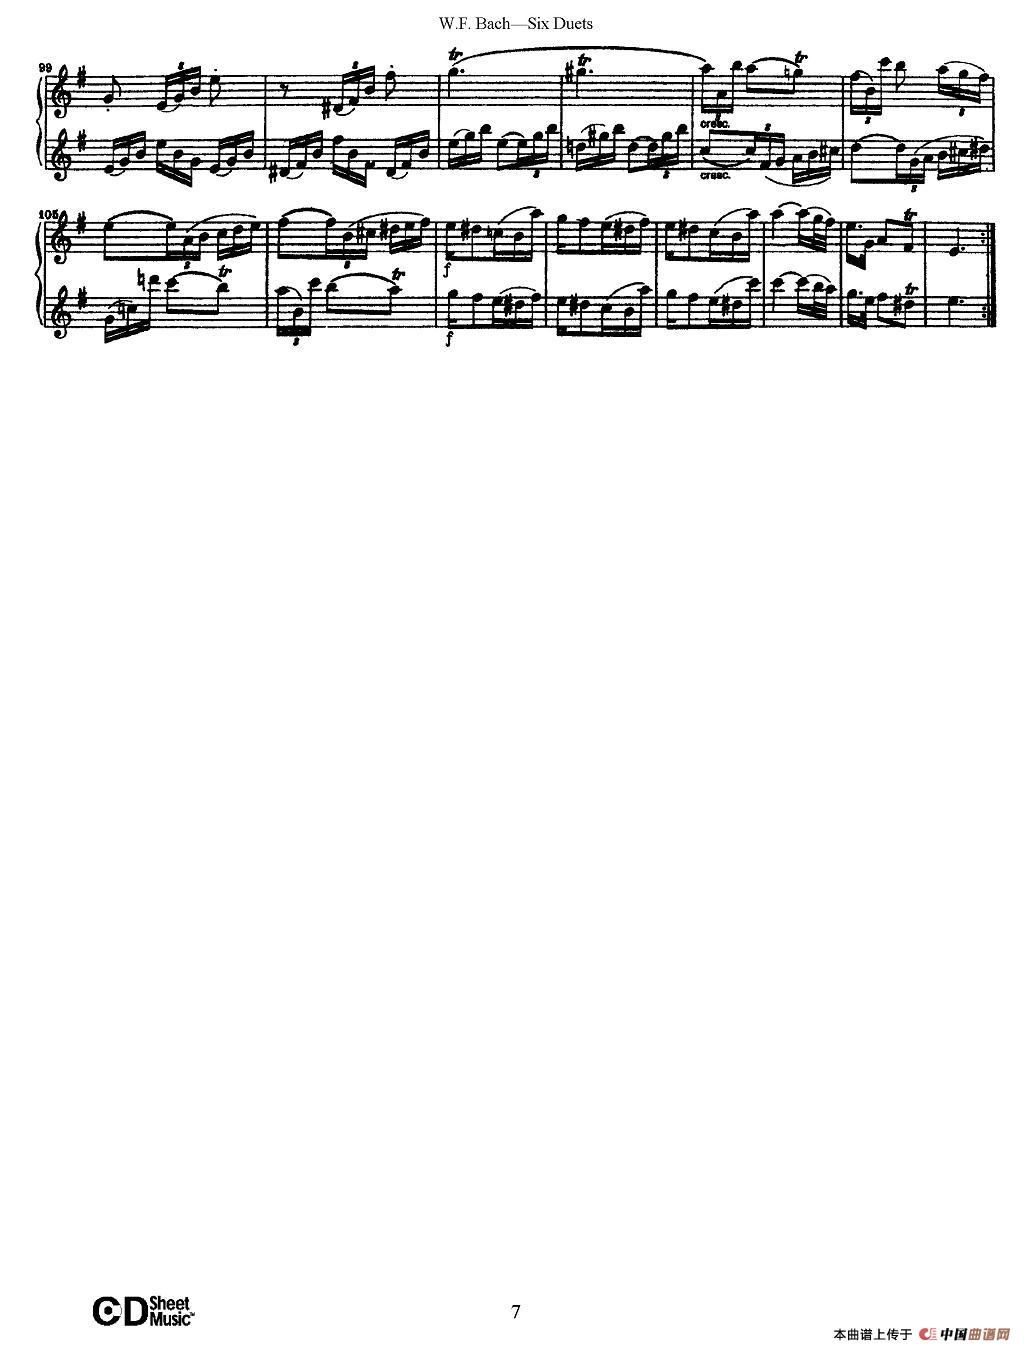 W.F.巴赫—六首二重奏练习曲（1）长笛谱